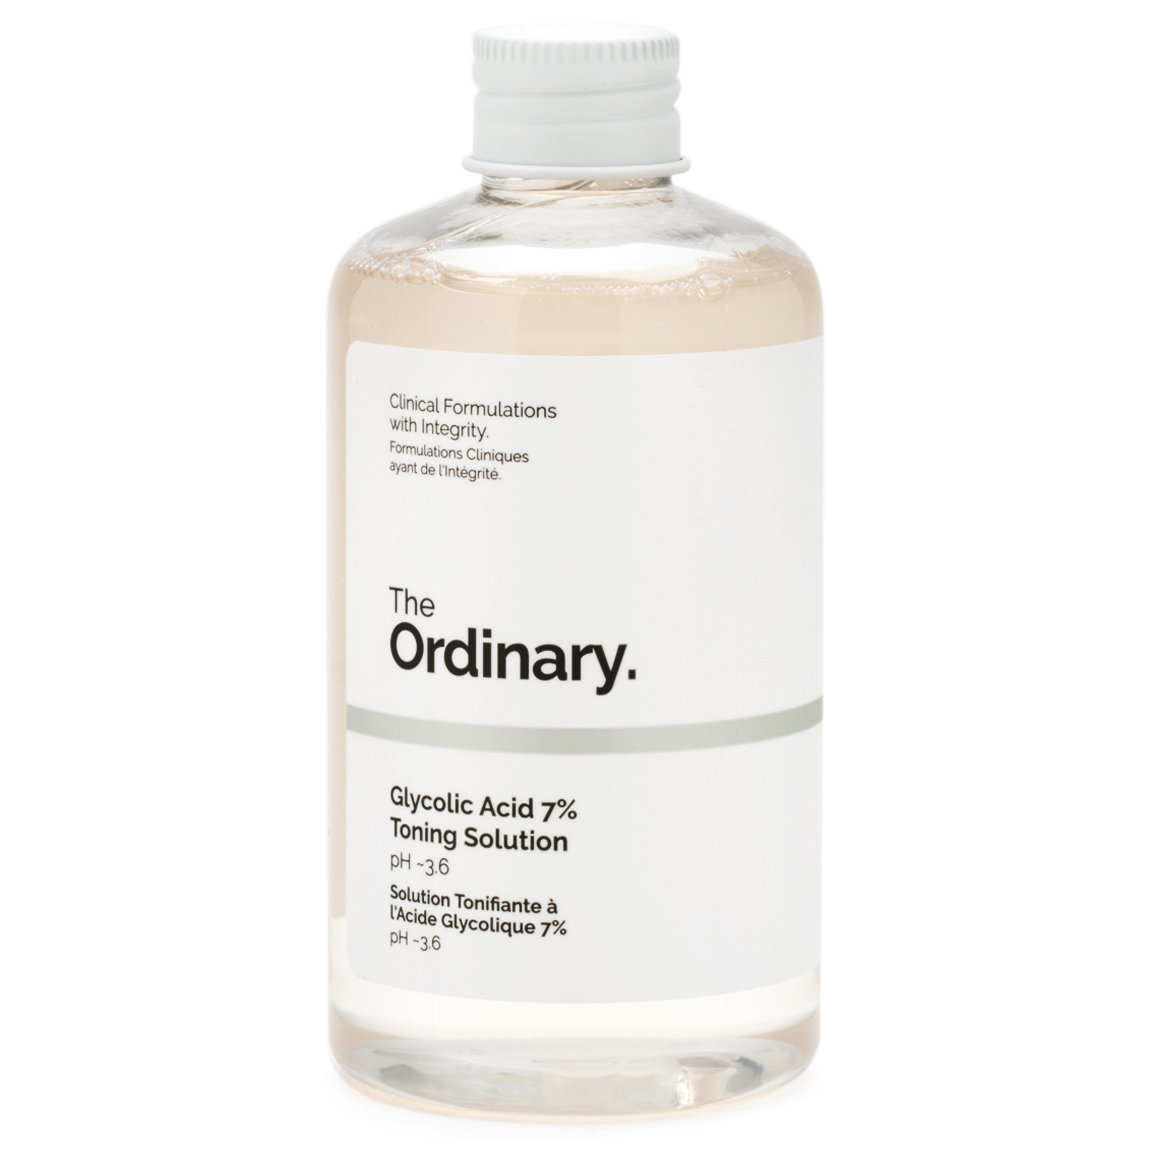 The Ordinary. Glycolic Acid 7% Toning Solution | Beautylish1150 x 1150